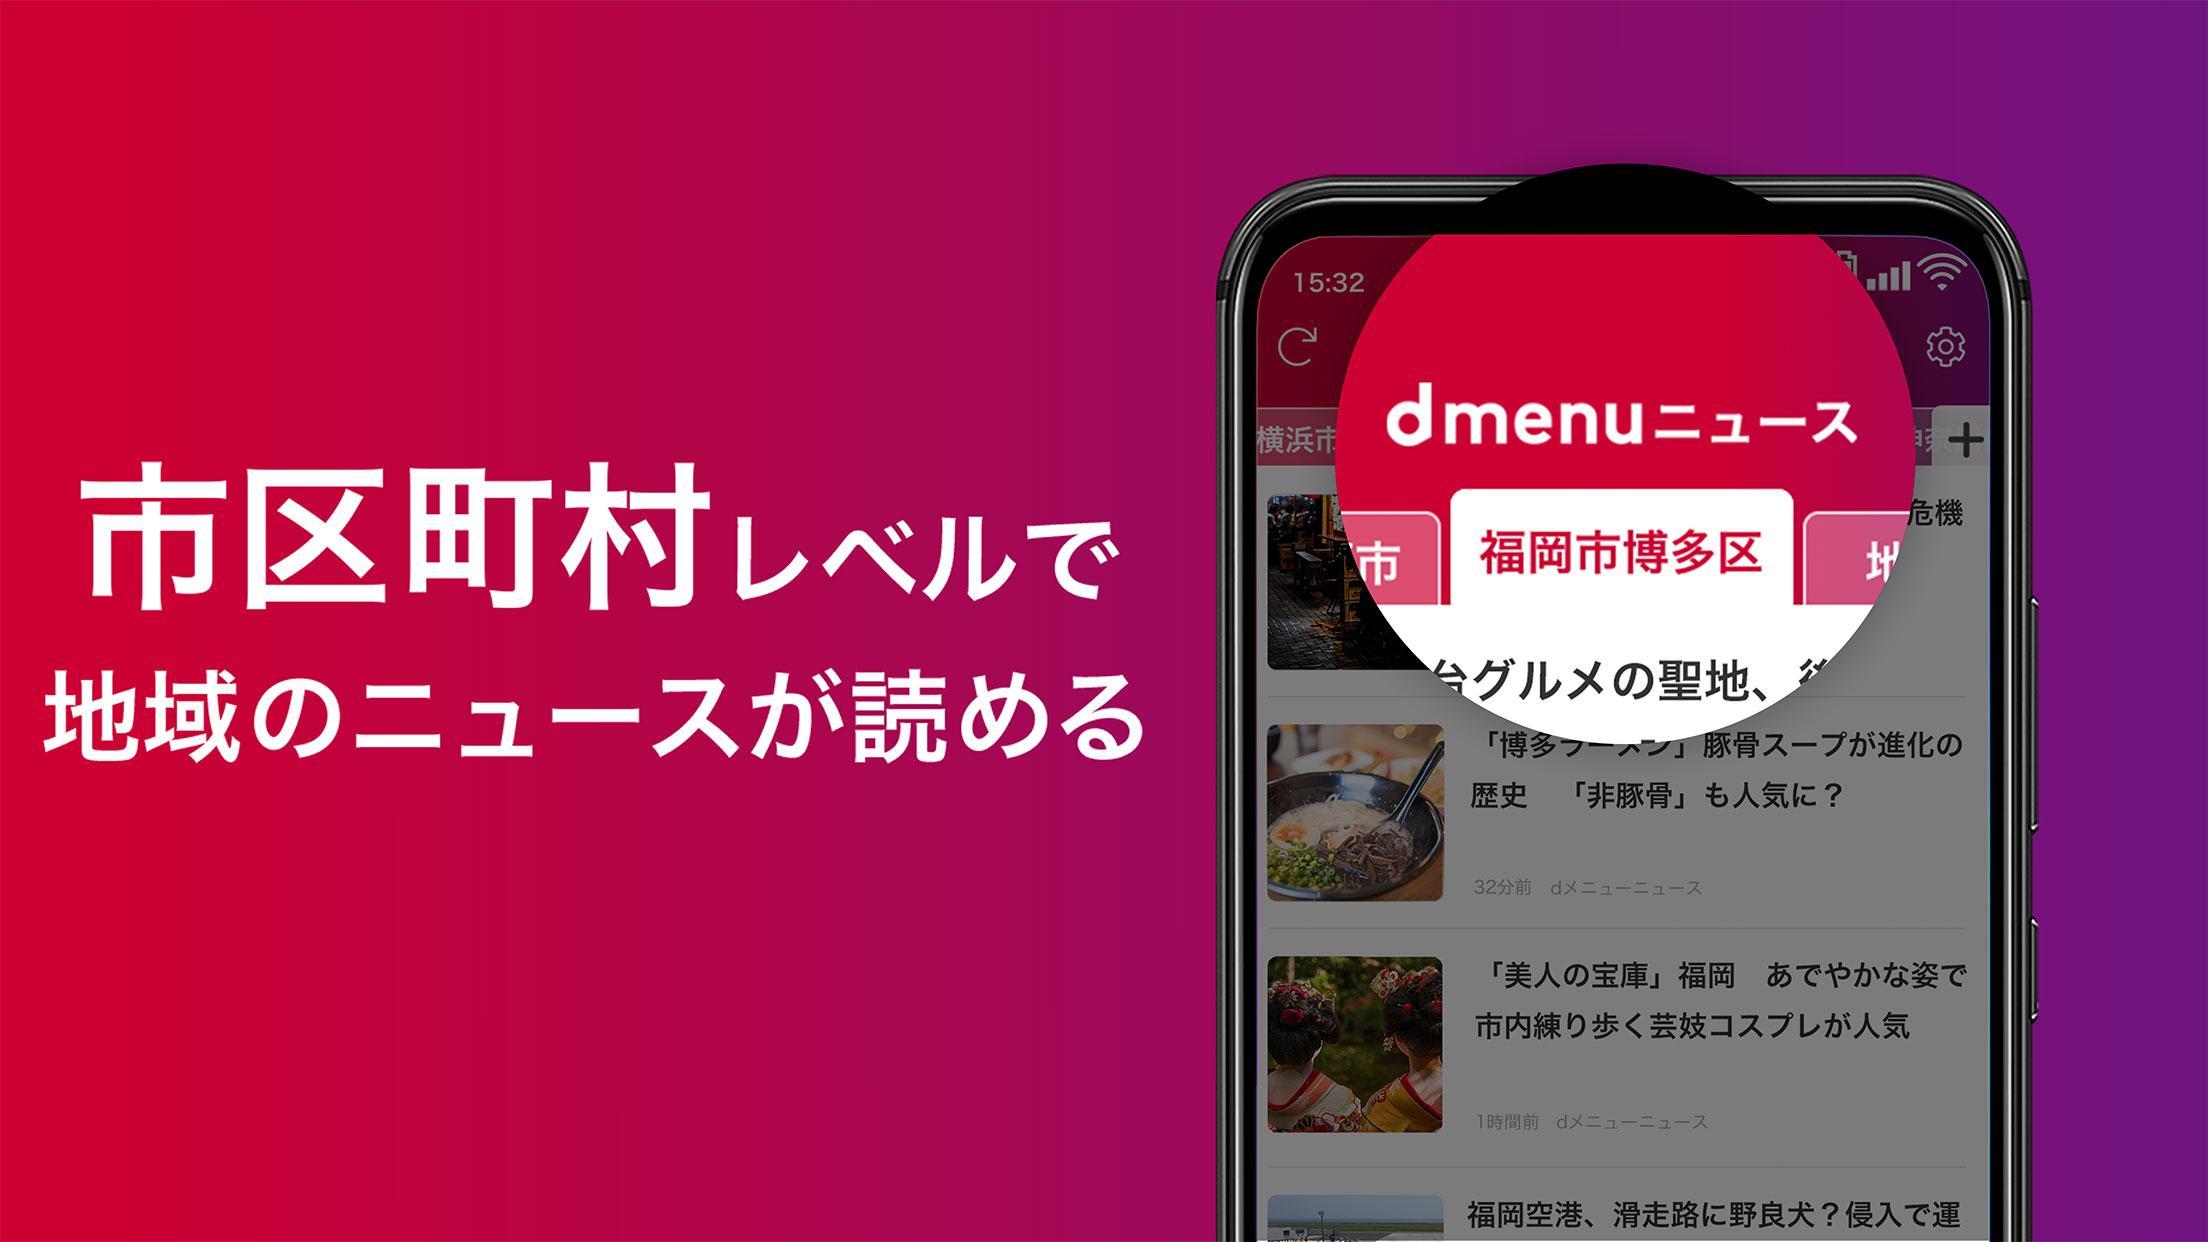 Android 用の Dmenuニュース 無料で読めるドコモが提供する安心信頼のニュースアプリ Apk をダウンロード